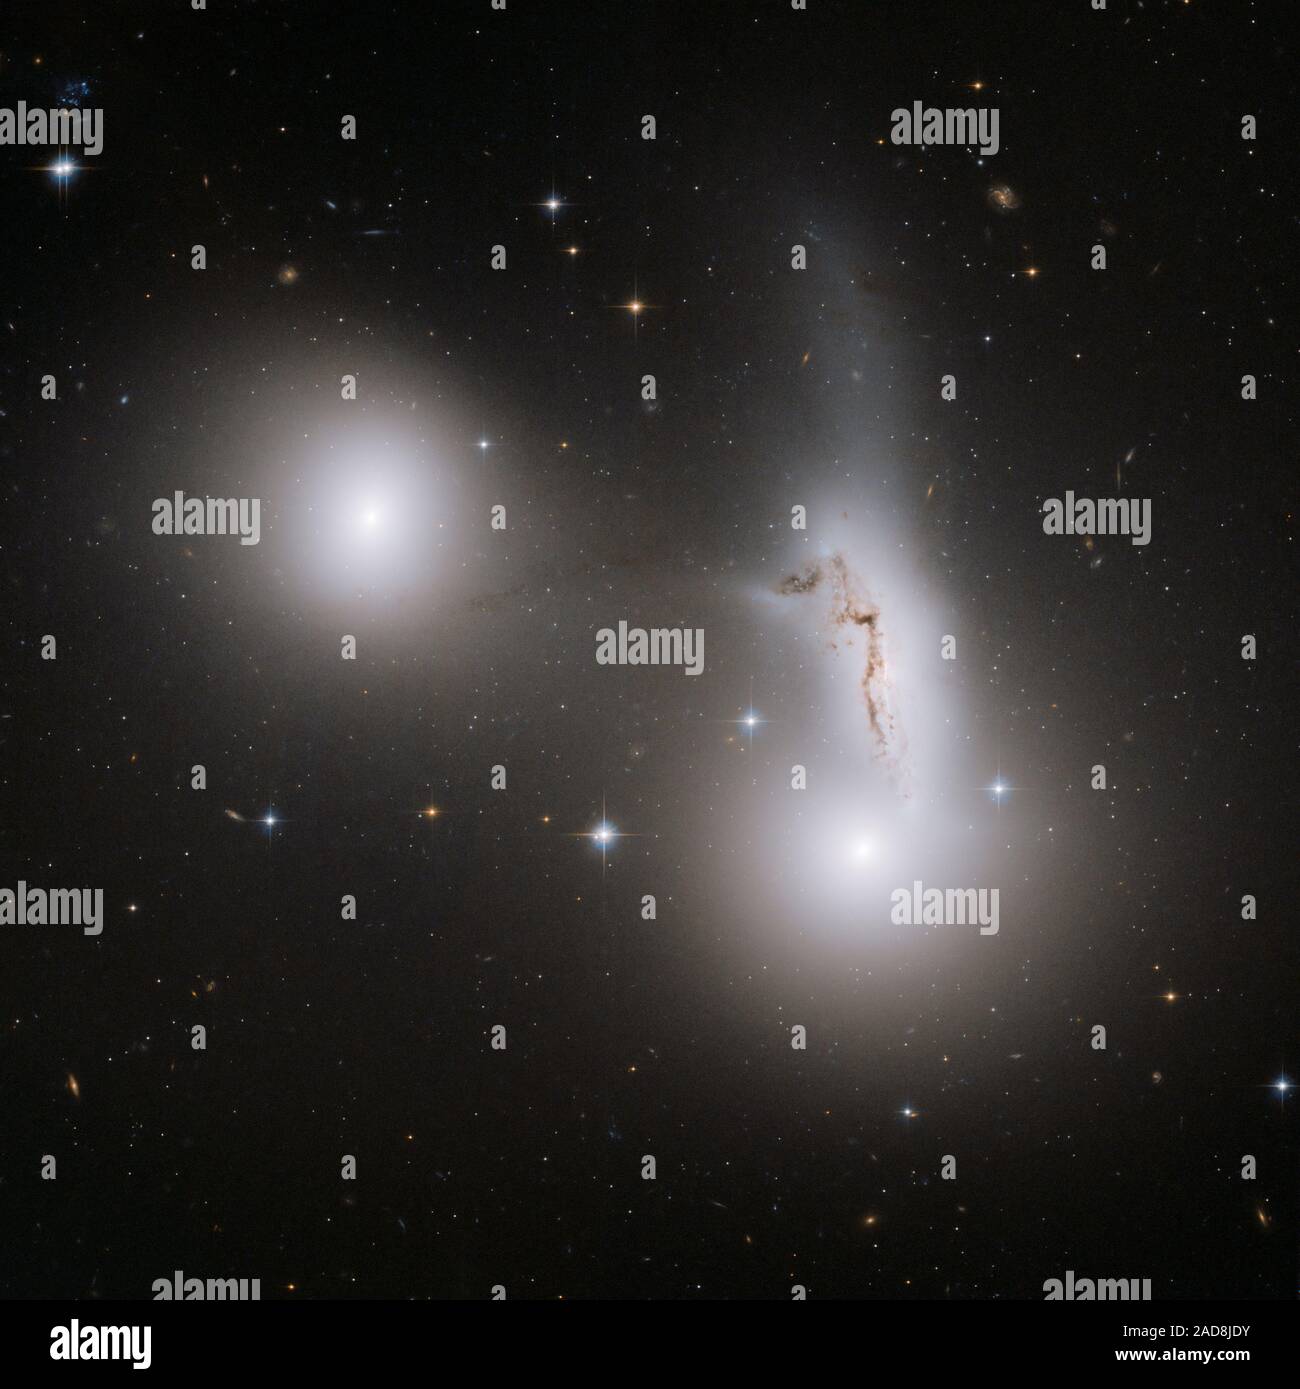 Esta imagen del Telescopio Espacial Hubble de la NASA muestra tres galaxias jugando un juego de atracción gravitacional-de-guerra que podría resultar en la desaparición de uno de ellos. Situado a unos 100 millones de años luz de distancia en la constelación de Piscis Austrinus (el pez Austral), la interacción de la galaxia puede conducir finalmente a las tres reformas en dos grandes ciudades de estrellas. Las tres galaxias--NGC 7173 (centro izquierda), NGC 7174 (centro derecha) y NGC 7176 (inferior derecha)- son parte del grupo compacto Hickson 90, nombrado después de que el astrónomo Paul Hickson, quien primero catalogado estos pequeños cúmulos de galaxias en el decenio de 1980. N Foto de stock